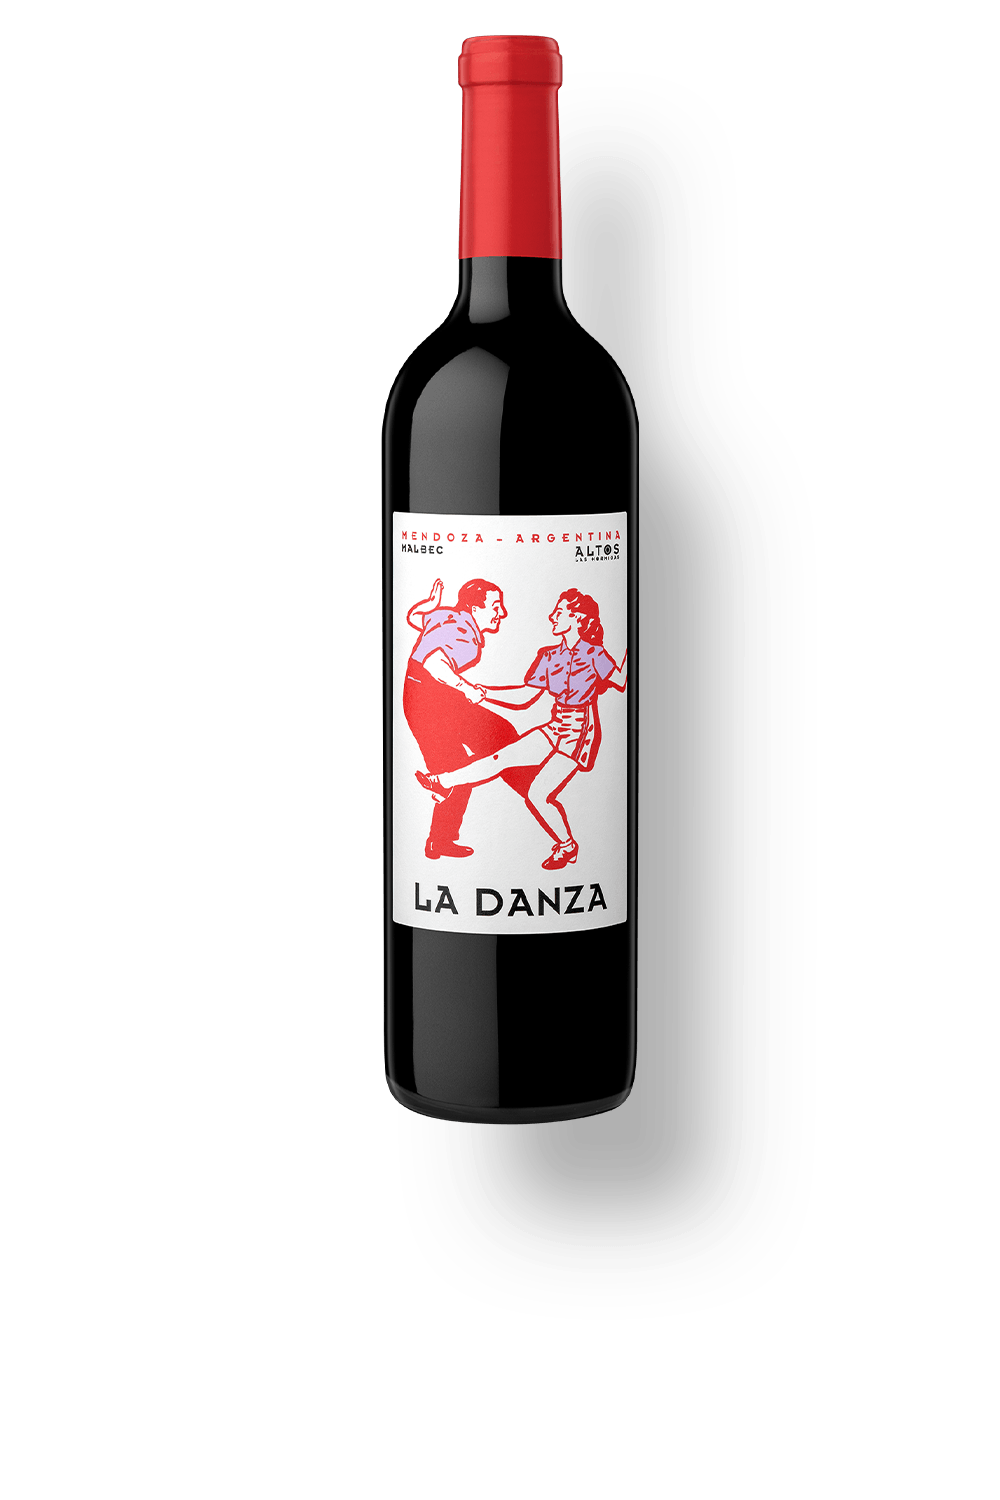 Antinori e novos rótulos na Wine: sabor e delicadeza em vinhos